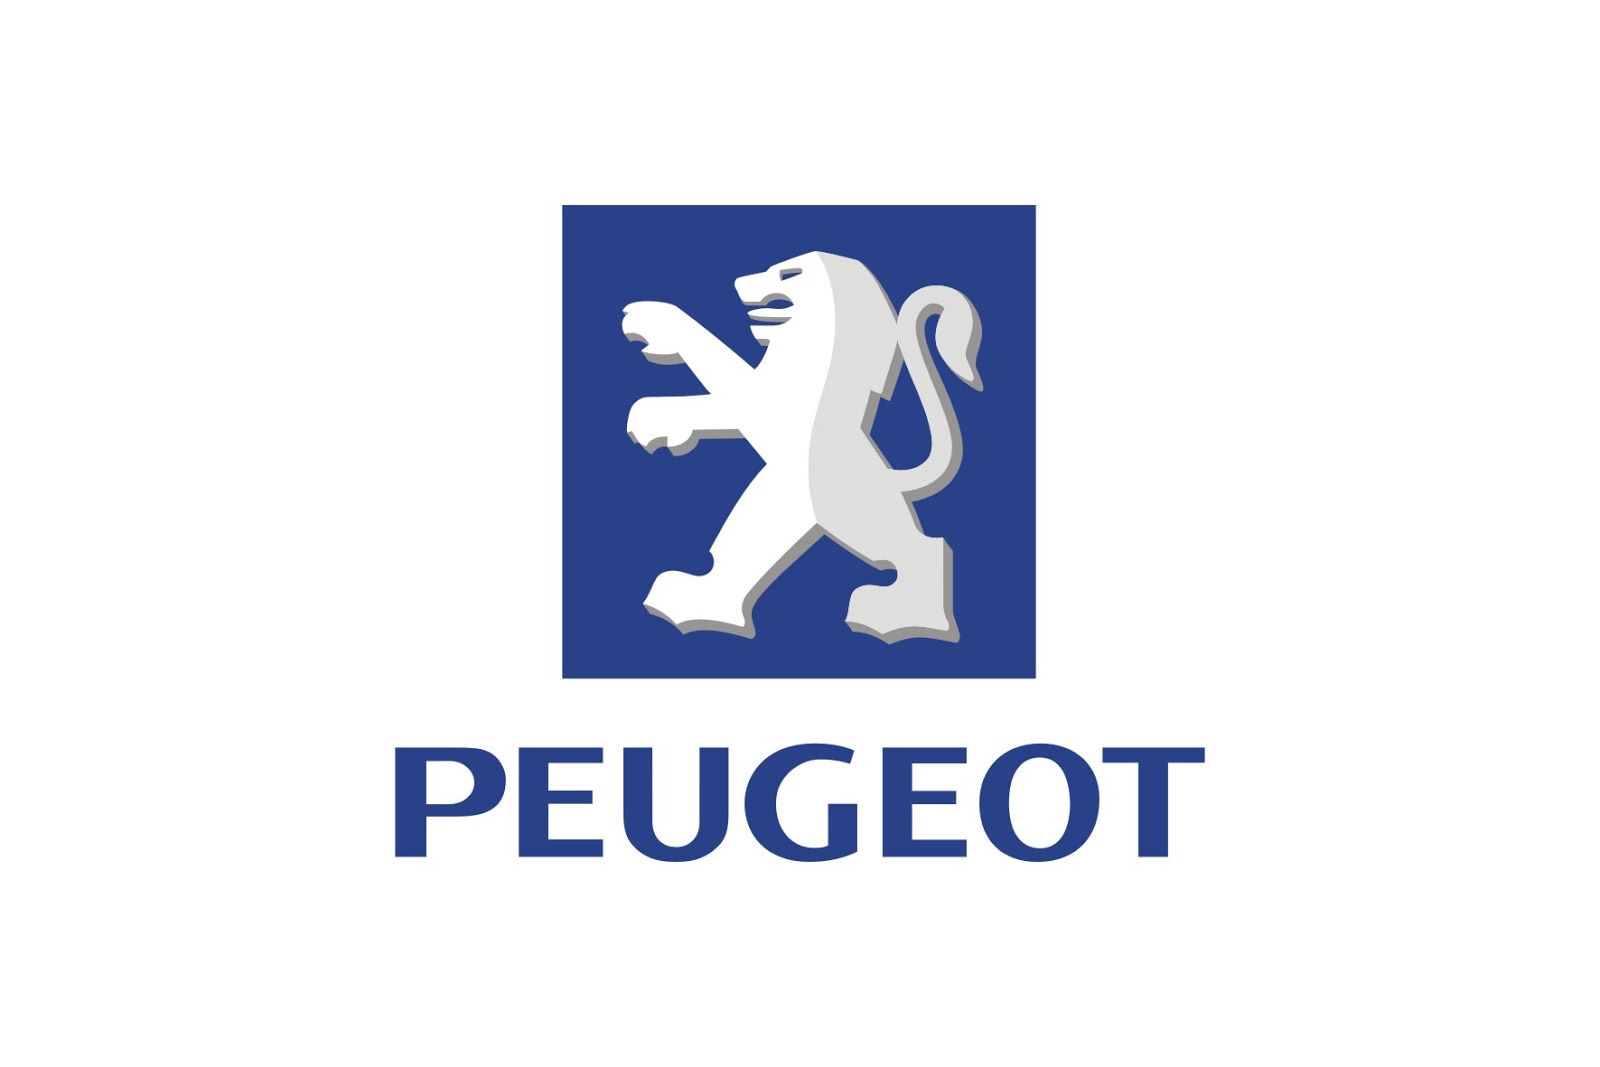 Peugeot-logo-5.jpg